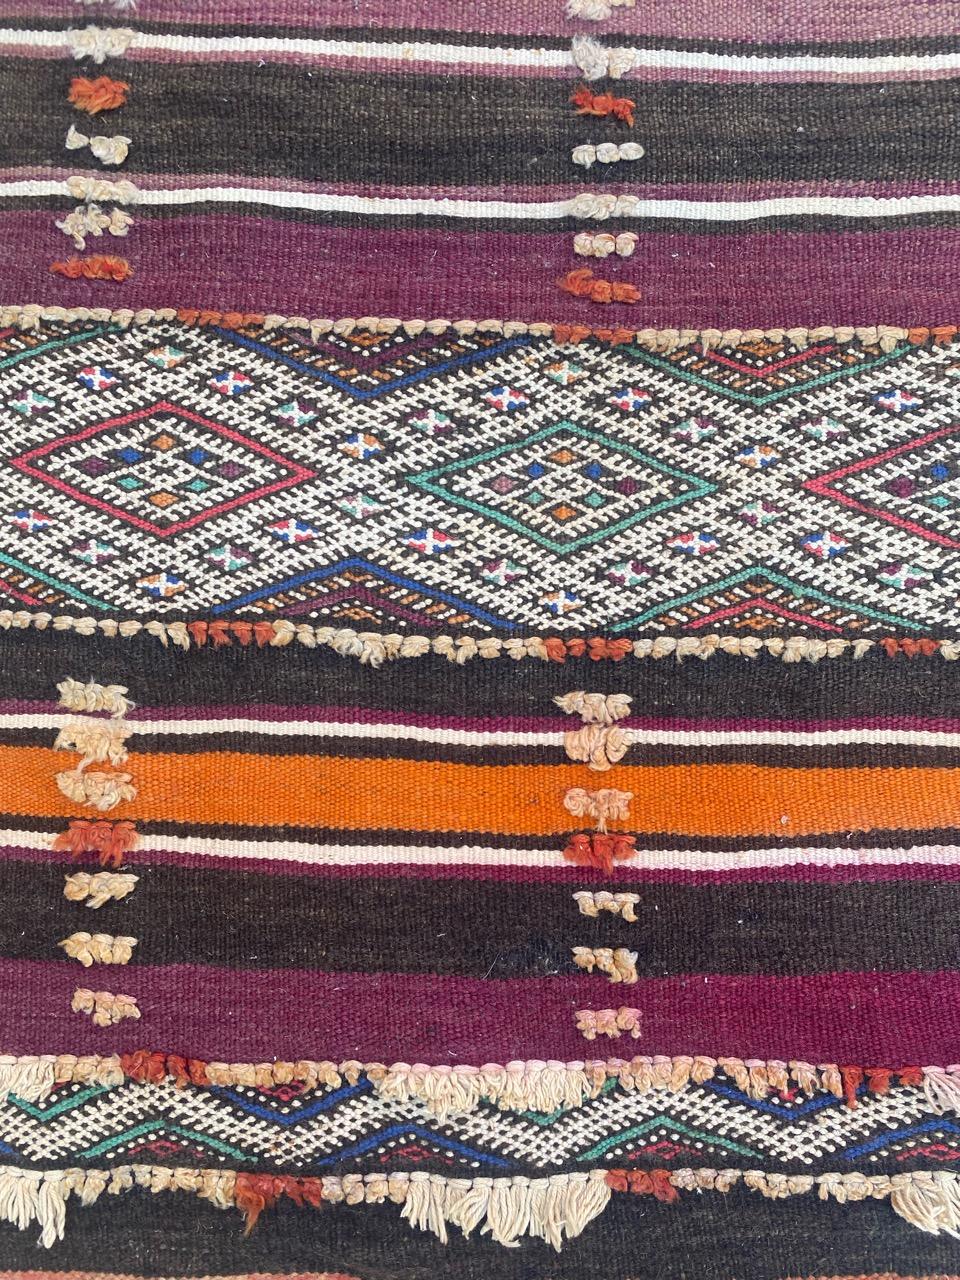 Entdecken Sie die zeitlose Eleganz eines marokkanischen Berber-Kilims aus dem frühen 20. Jahrhundert. Dieser exquisite flache Teppich besticht durch sein geometrisches Stammesmuster in atemberaubenden Naturfarben, darunter Lila, Orange, Grün, Blau,